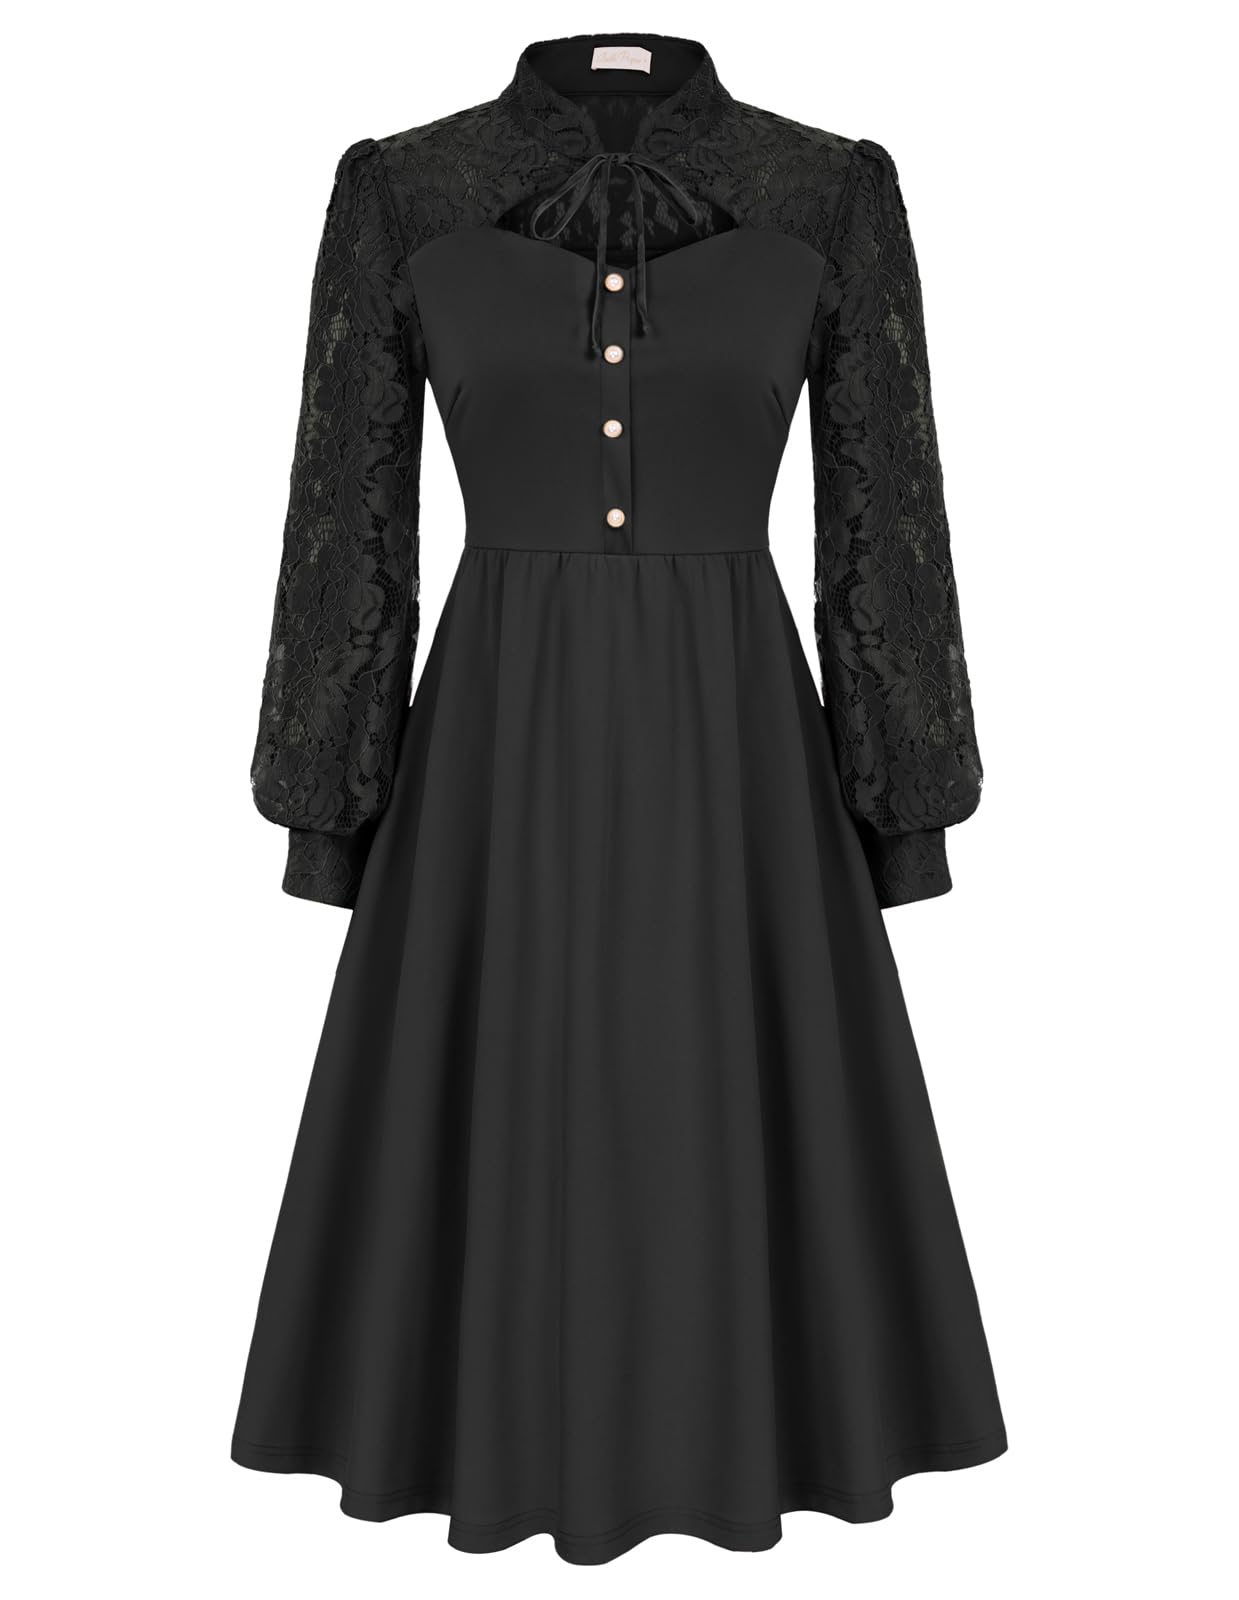 Damen Gothic Kleid Elegant Langarm A-Linie Kleider Festliche Cocktailkleid Abendkleid Schwarz XL